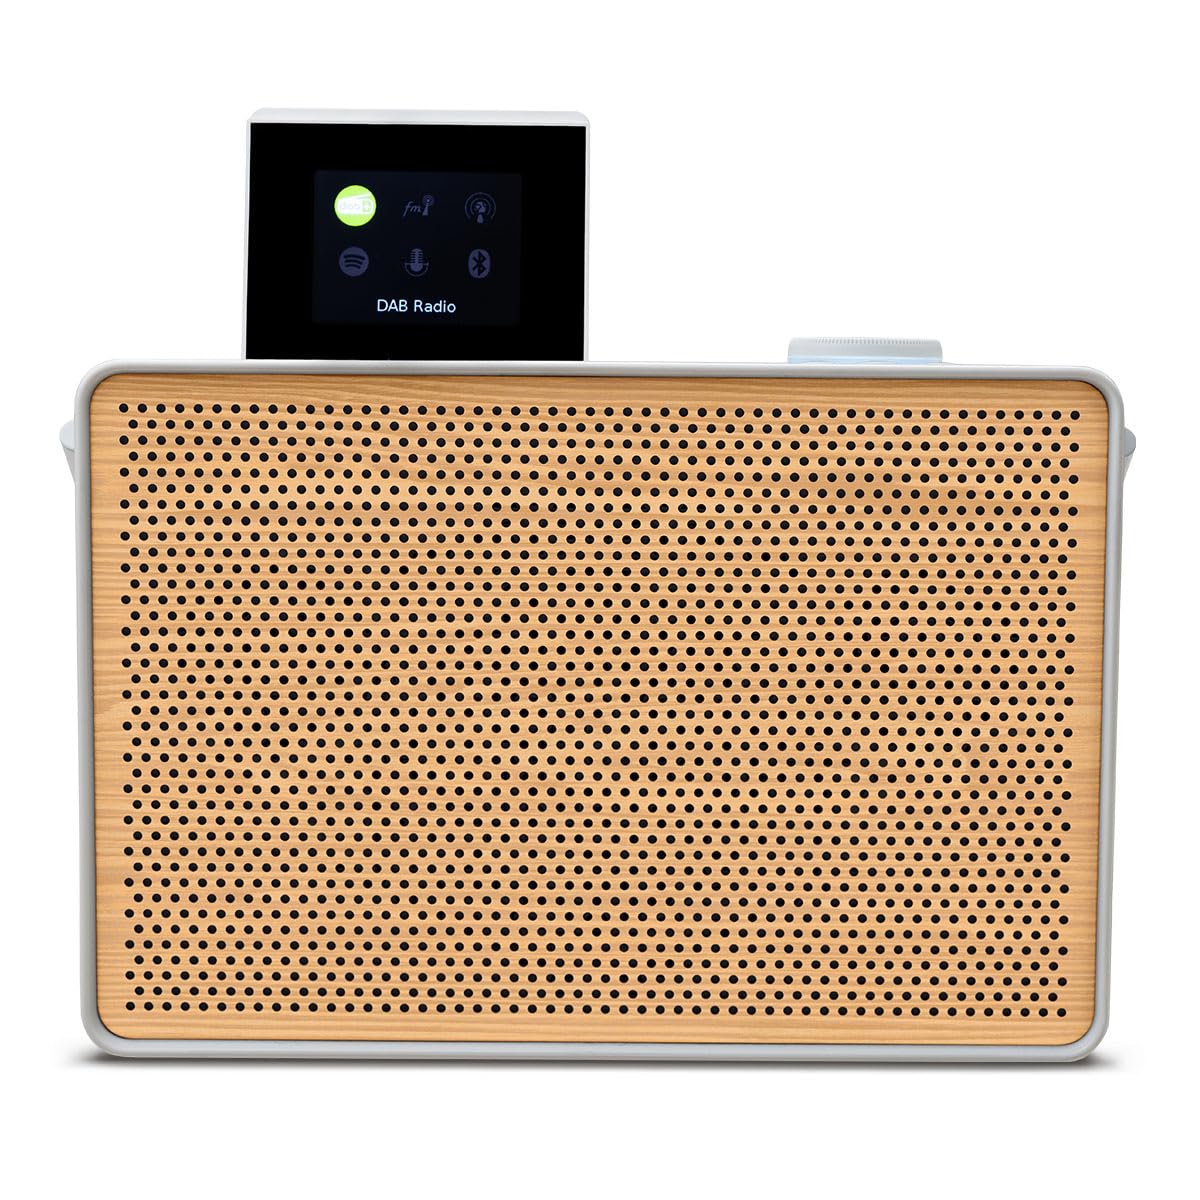 Pure Evoke Play portables Musiksystem für innen und außen (DAB+/FM Radio, Internetradio, Spotify Connect, Bluetooth) Special Edition Weiß/Holz